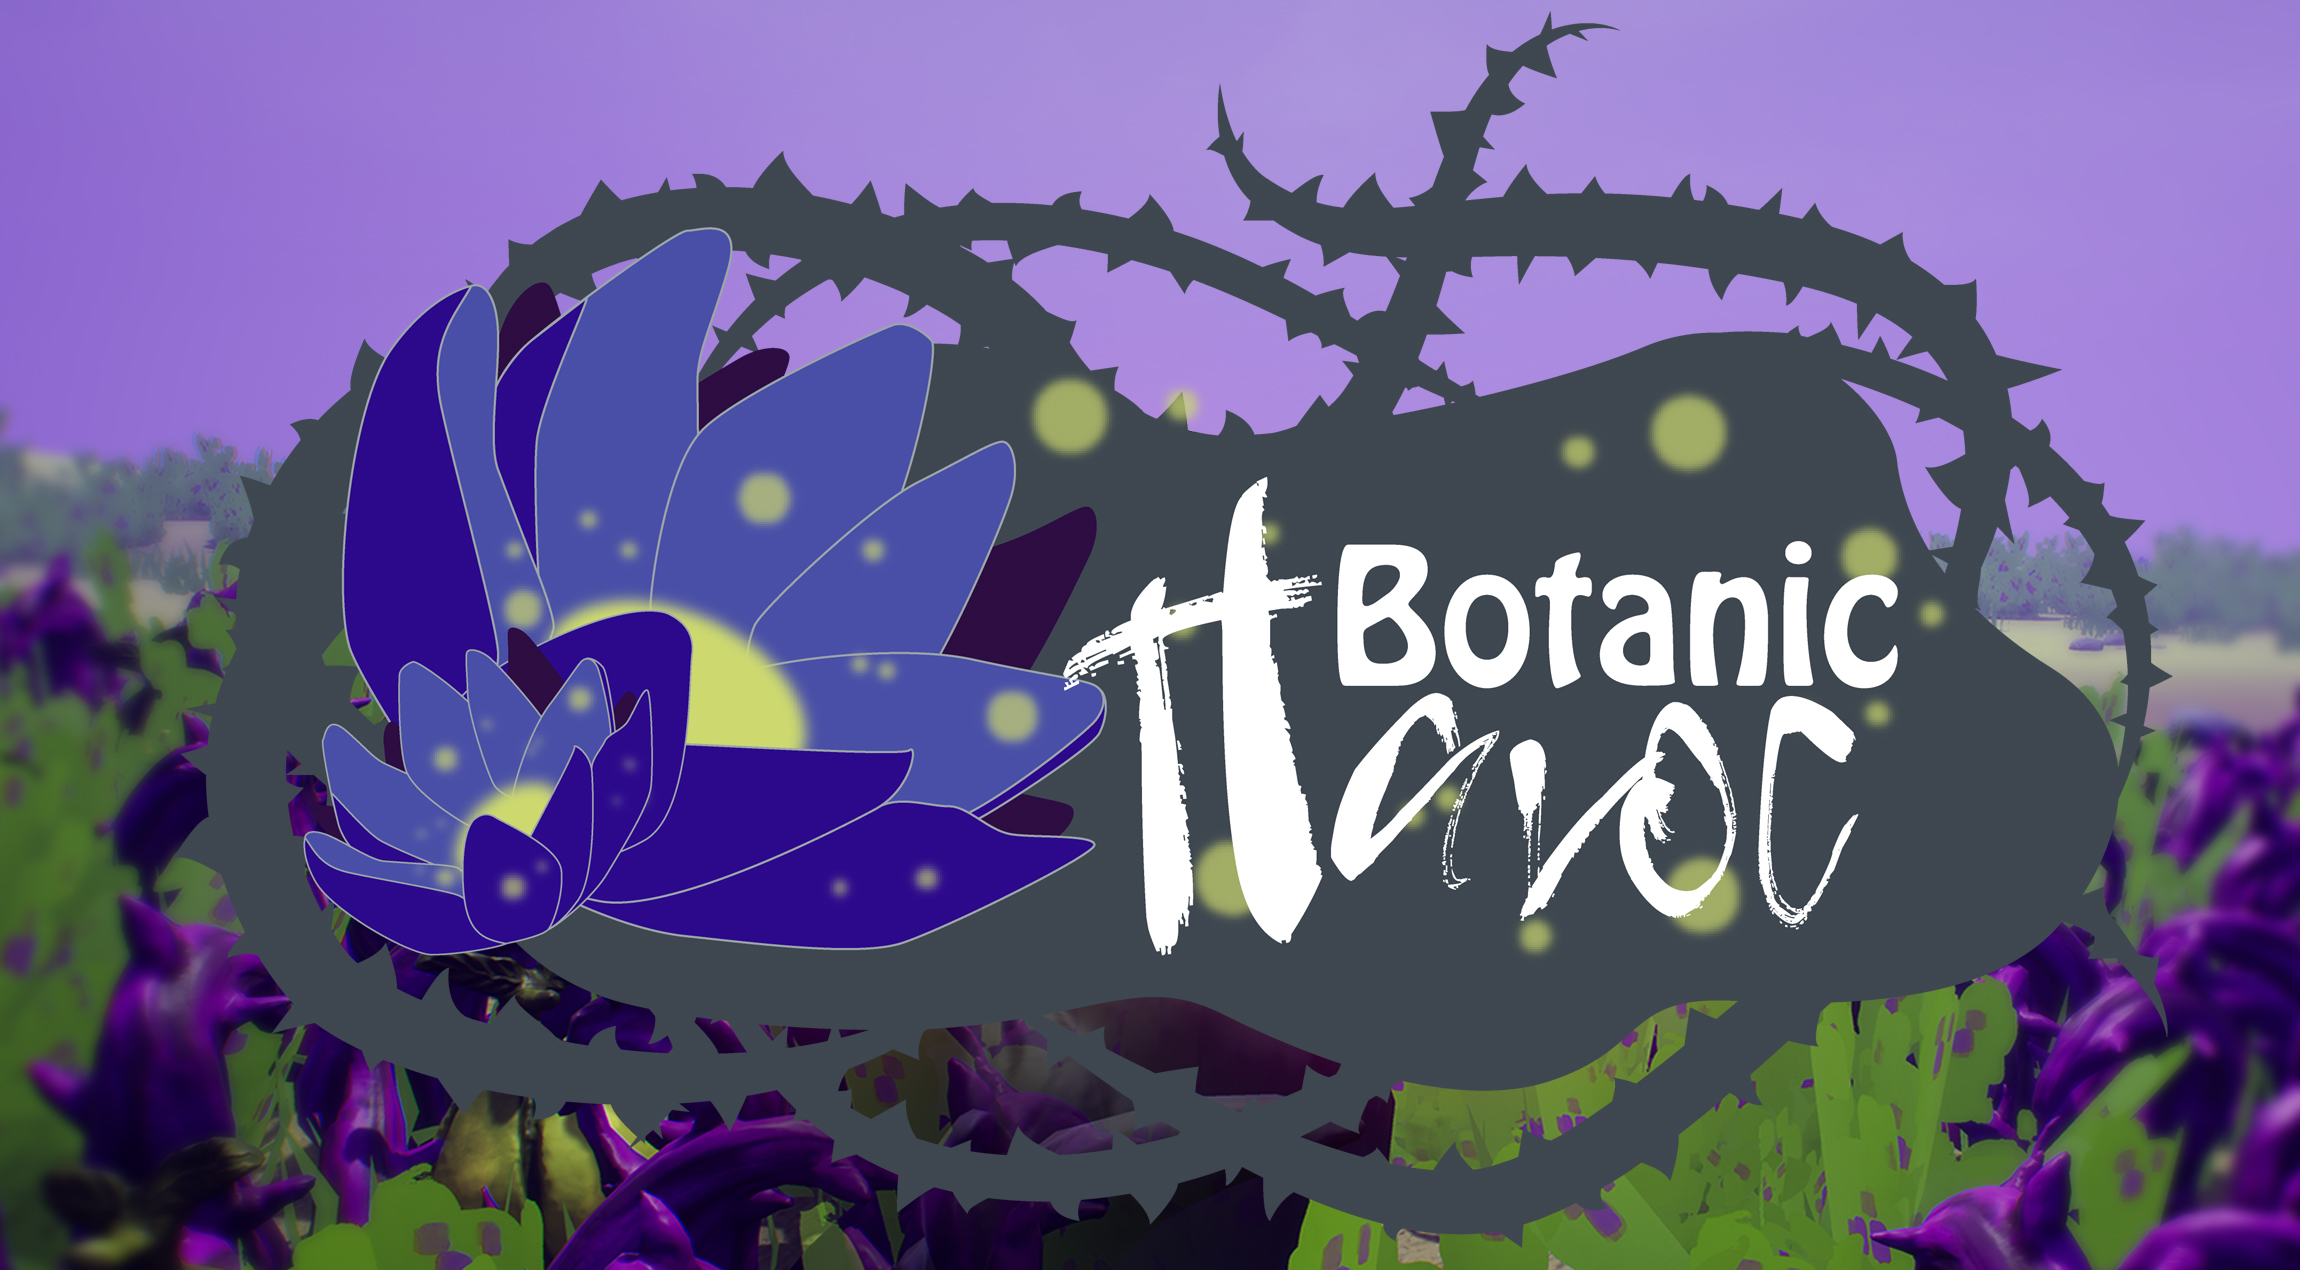 Botanic Heaven / Botanic Havoc